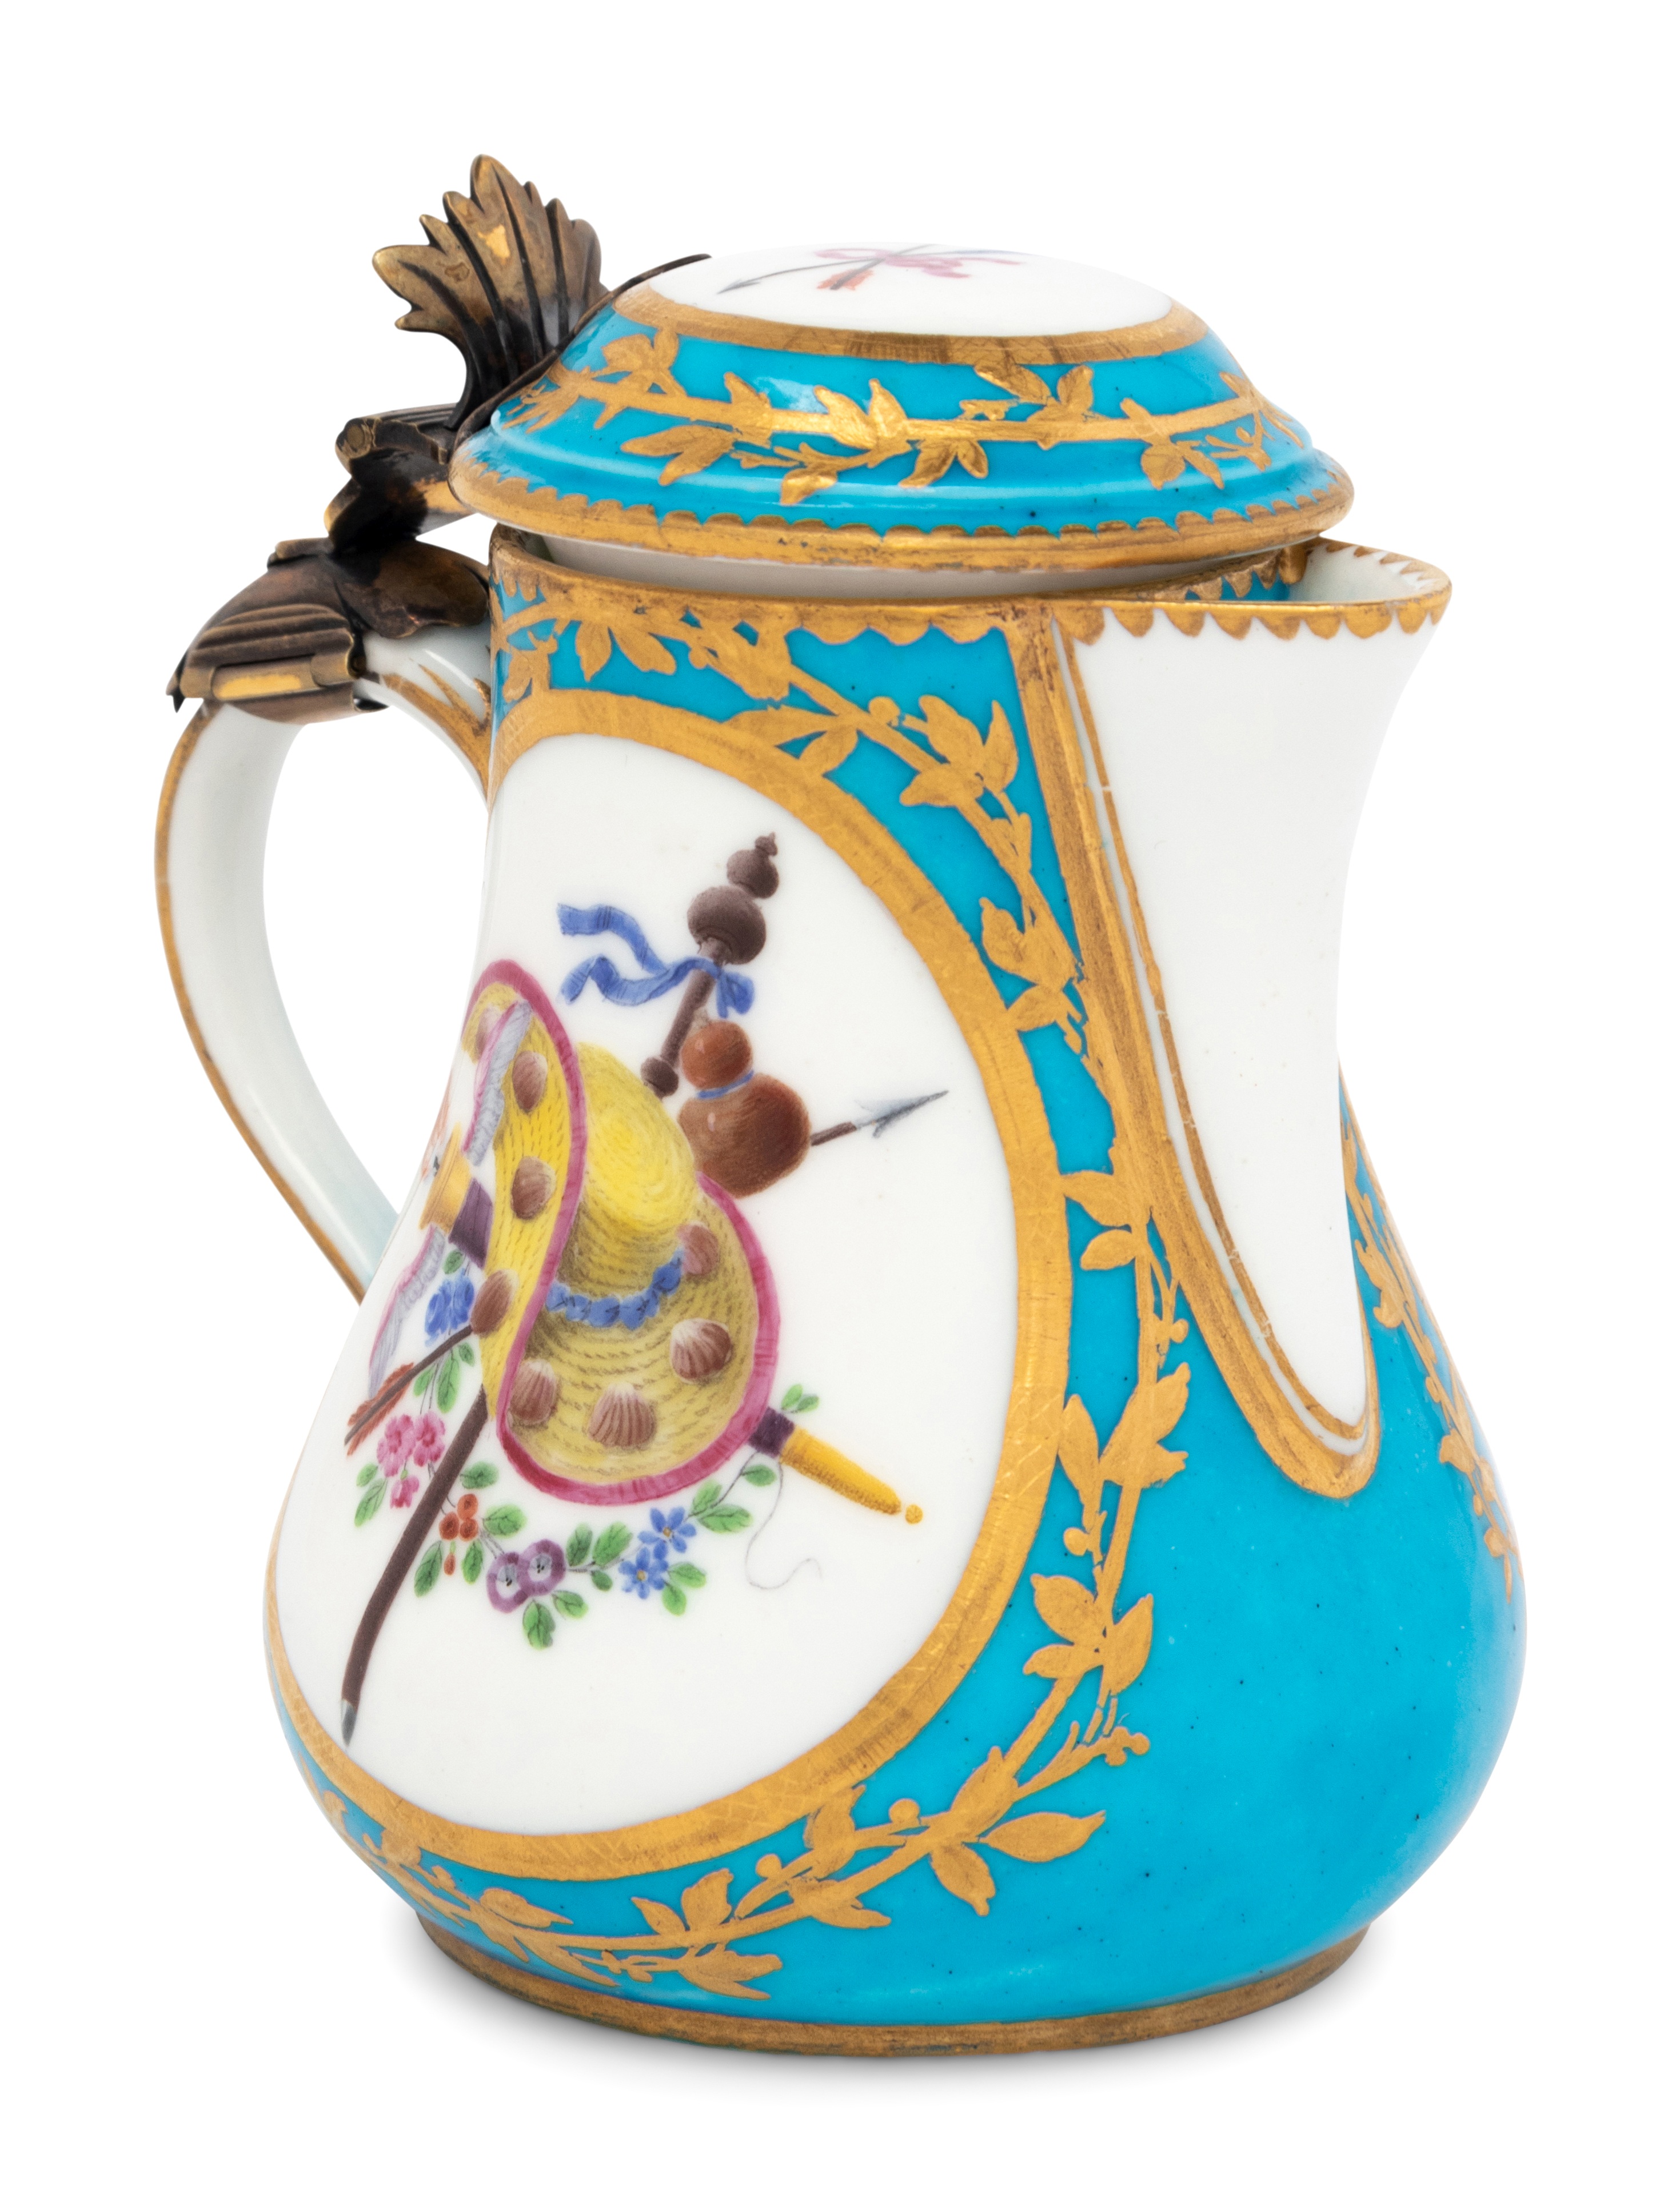 A Sevres Silver-Gilt Mounted Bleu Celeste Porcelain Hot Milk Jug and Cover (Pot a Lait 'Duvaux') - Image 12 of 29